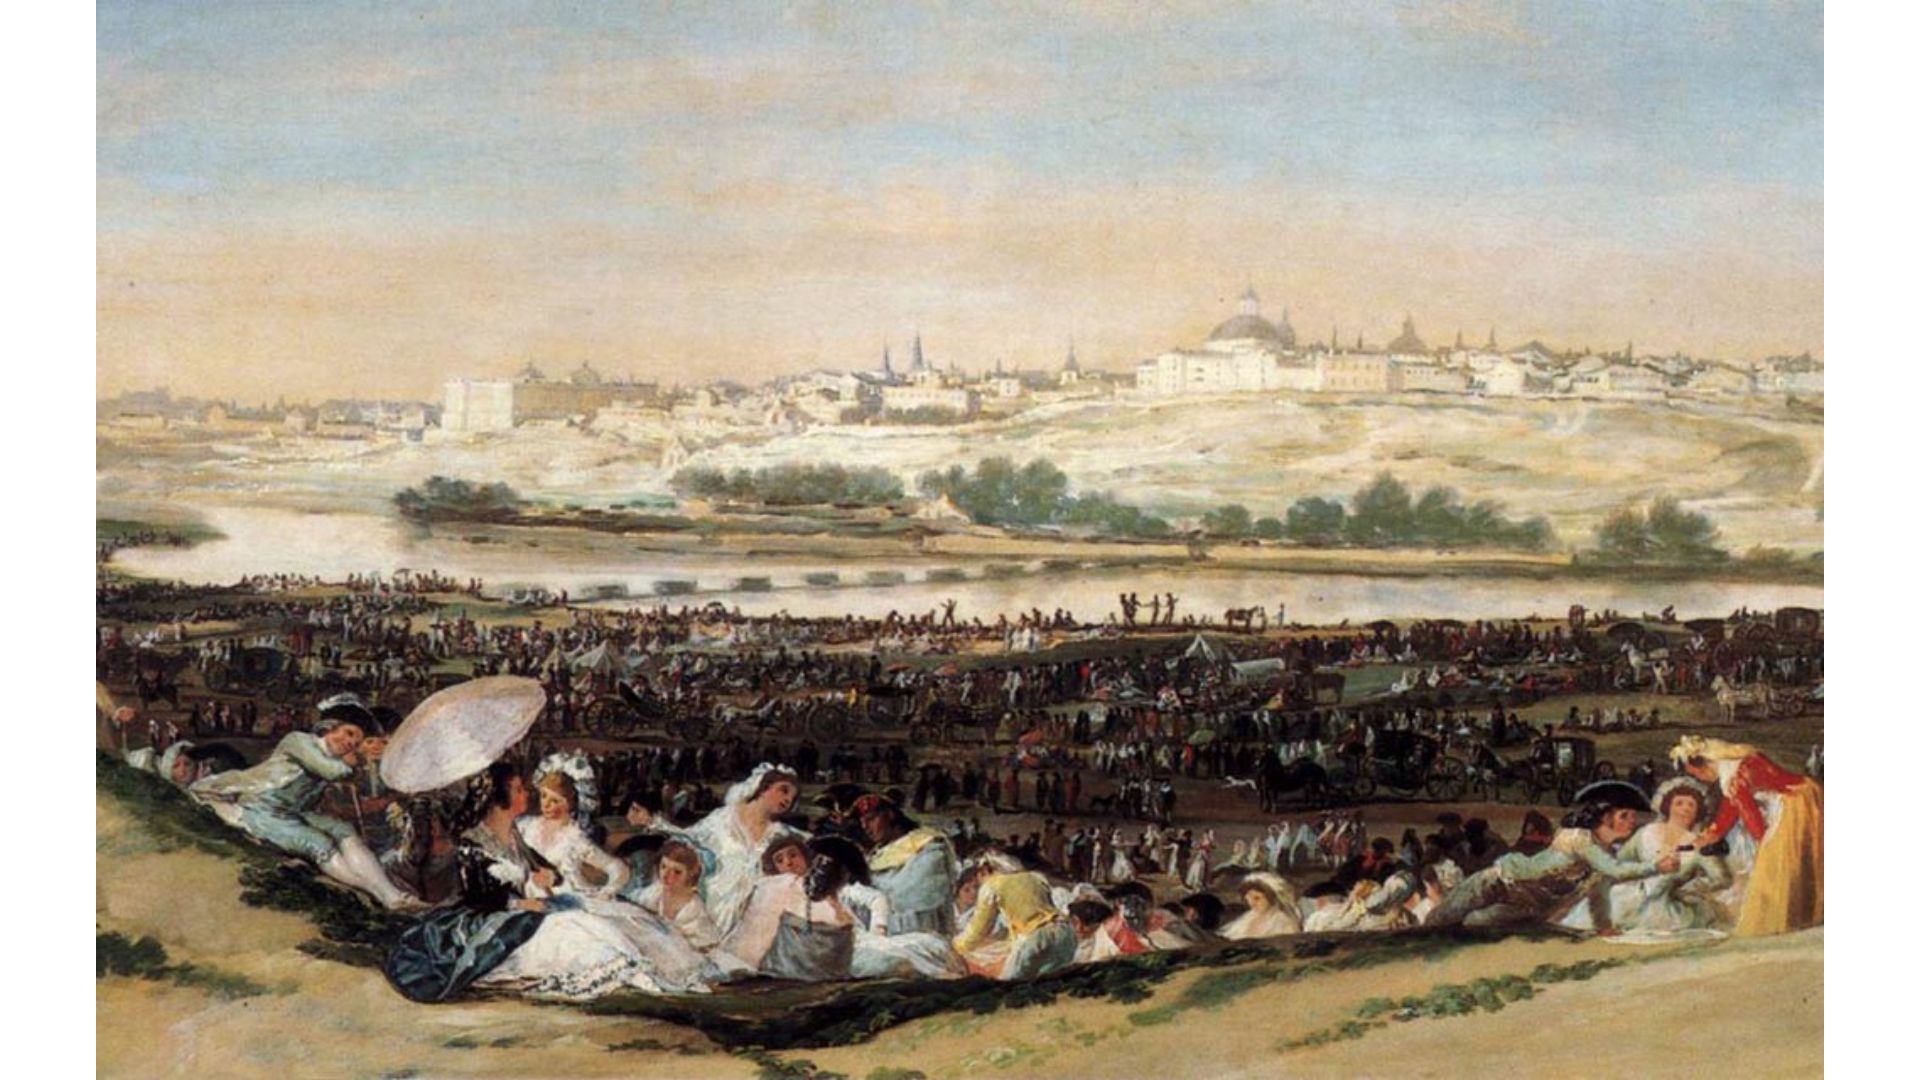 La pradera de San Isidro (1788)